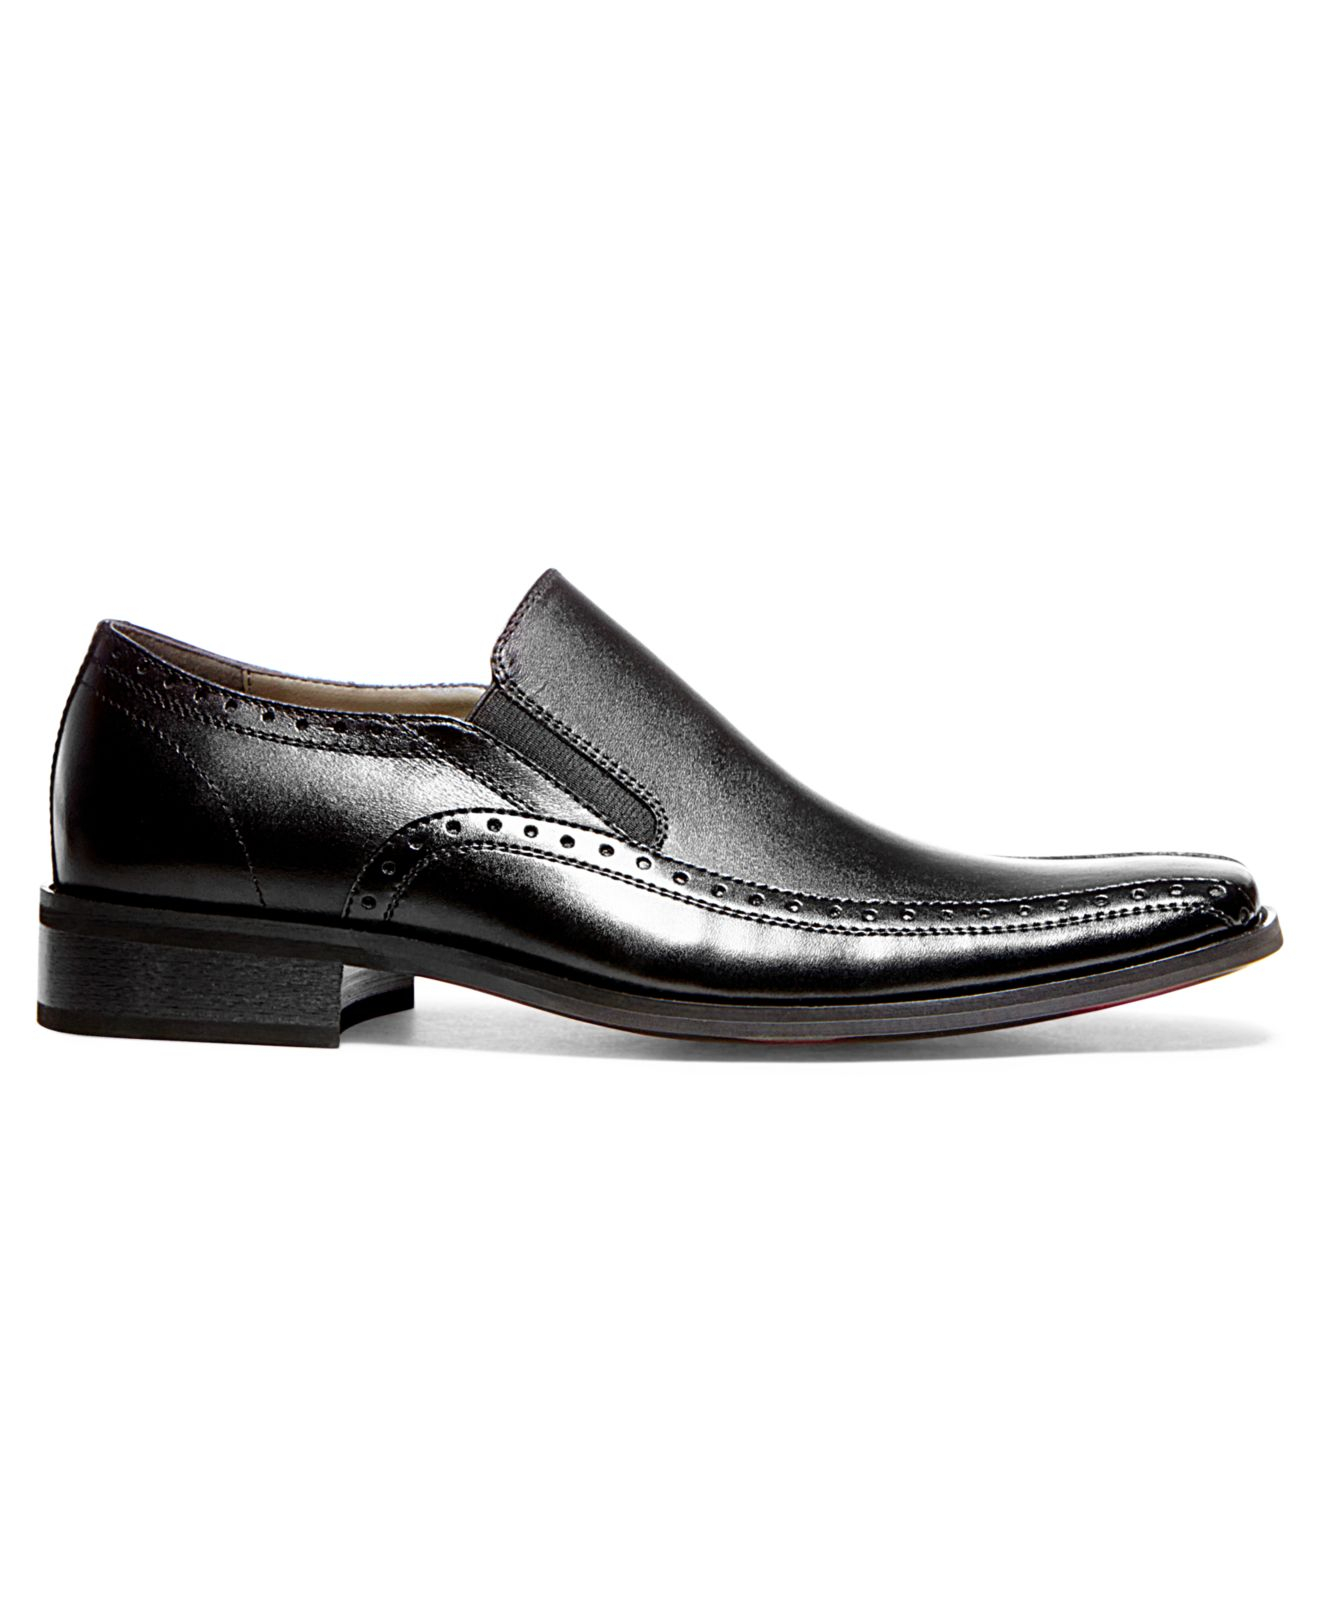 Lyst - Steve Madden Kaptive Slip-on Dress Shoes in Black for Men